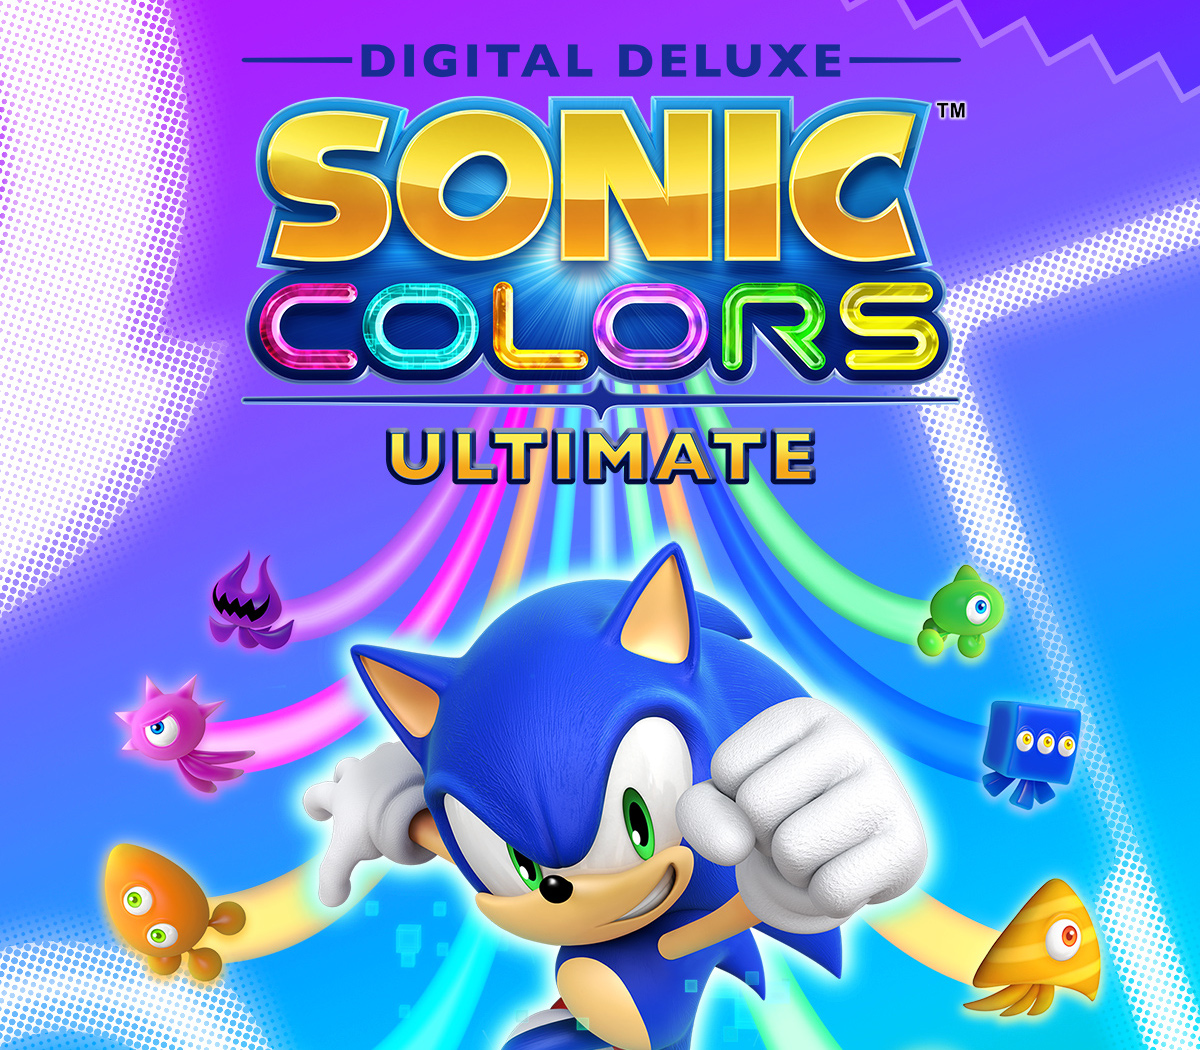 Compre Sonic Superstars PC Game - Steam Código em